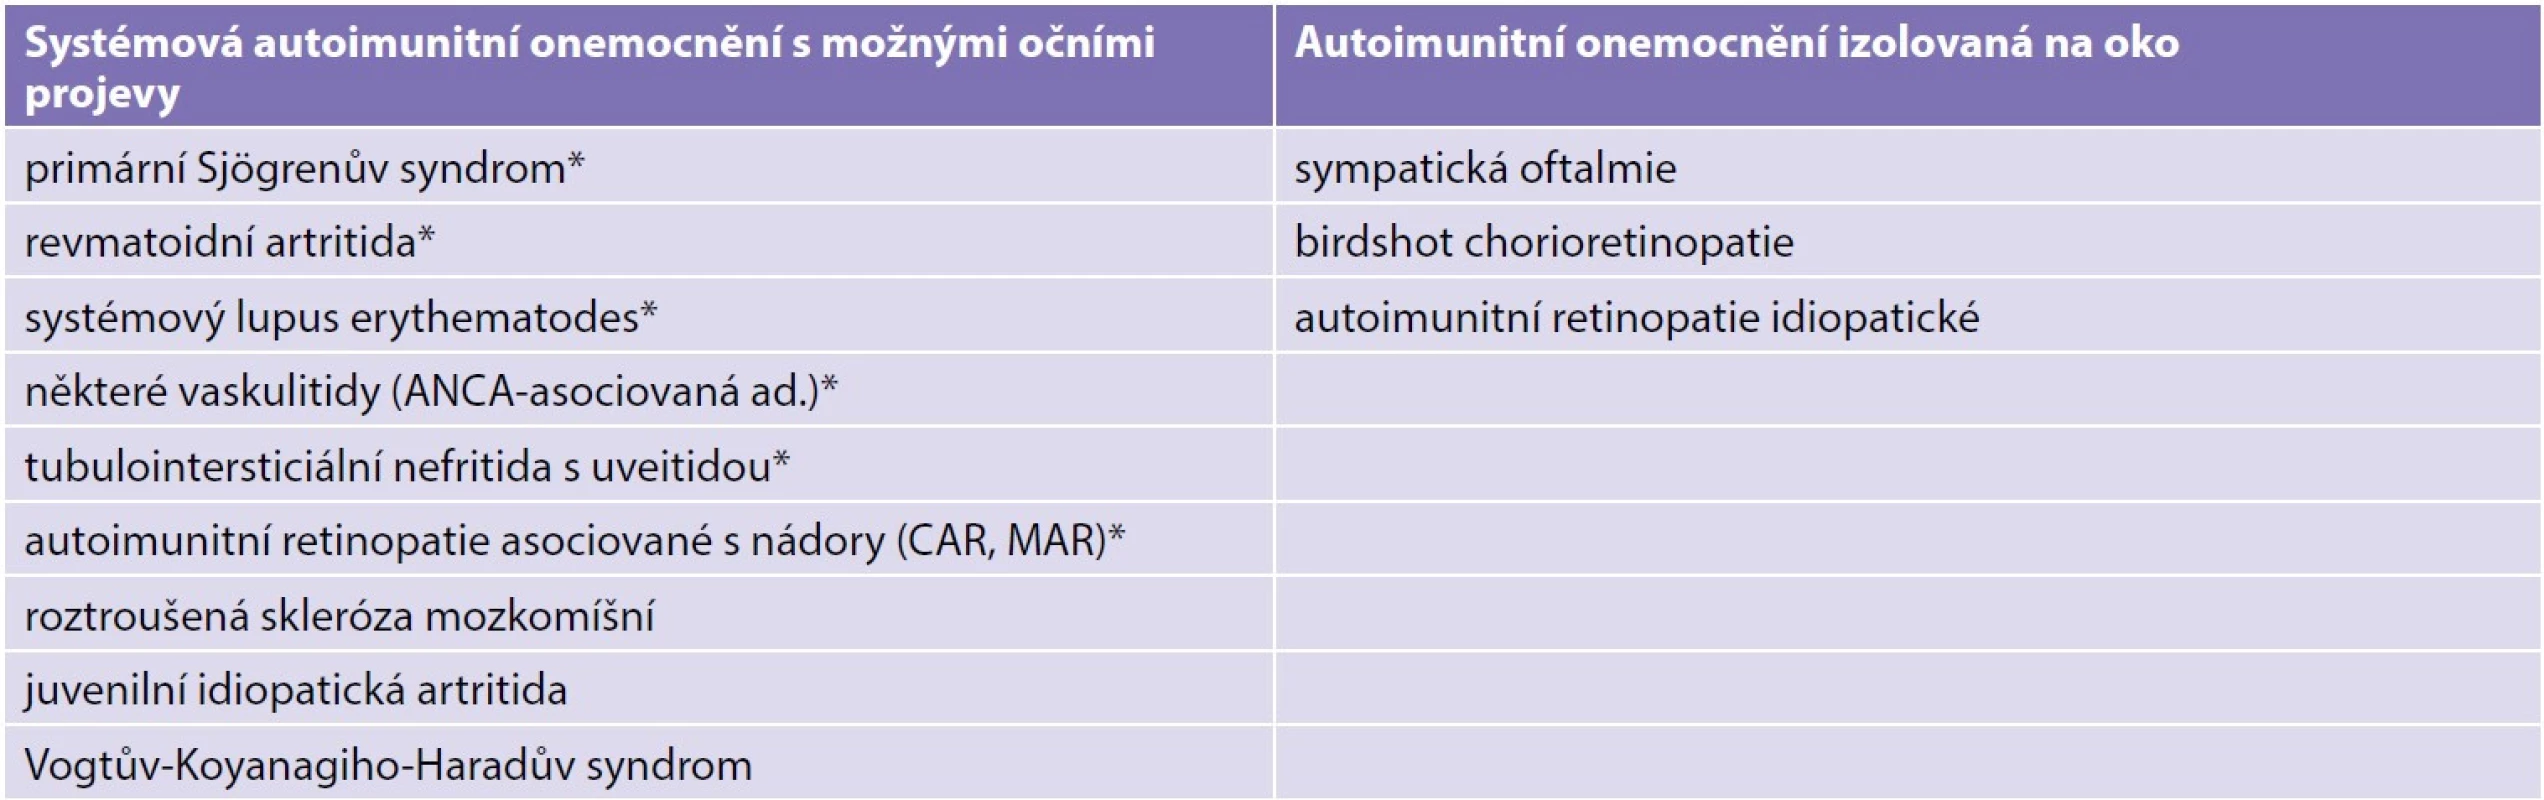 Autoimunitní onemocnění s charakteristickými autoprotilátkami (*) a předpokládaná autoimunitní onemocnění